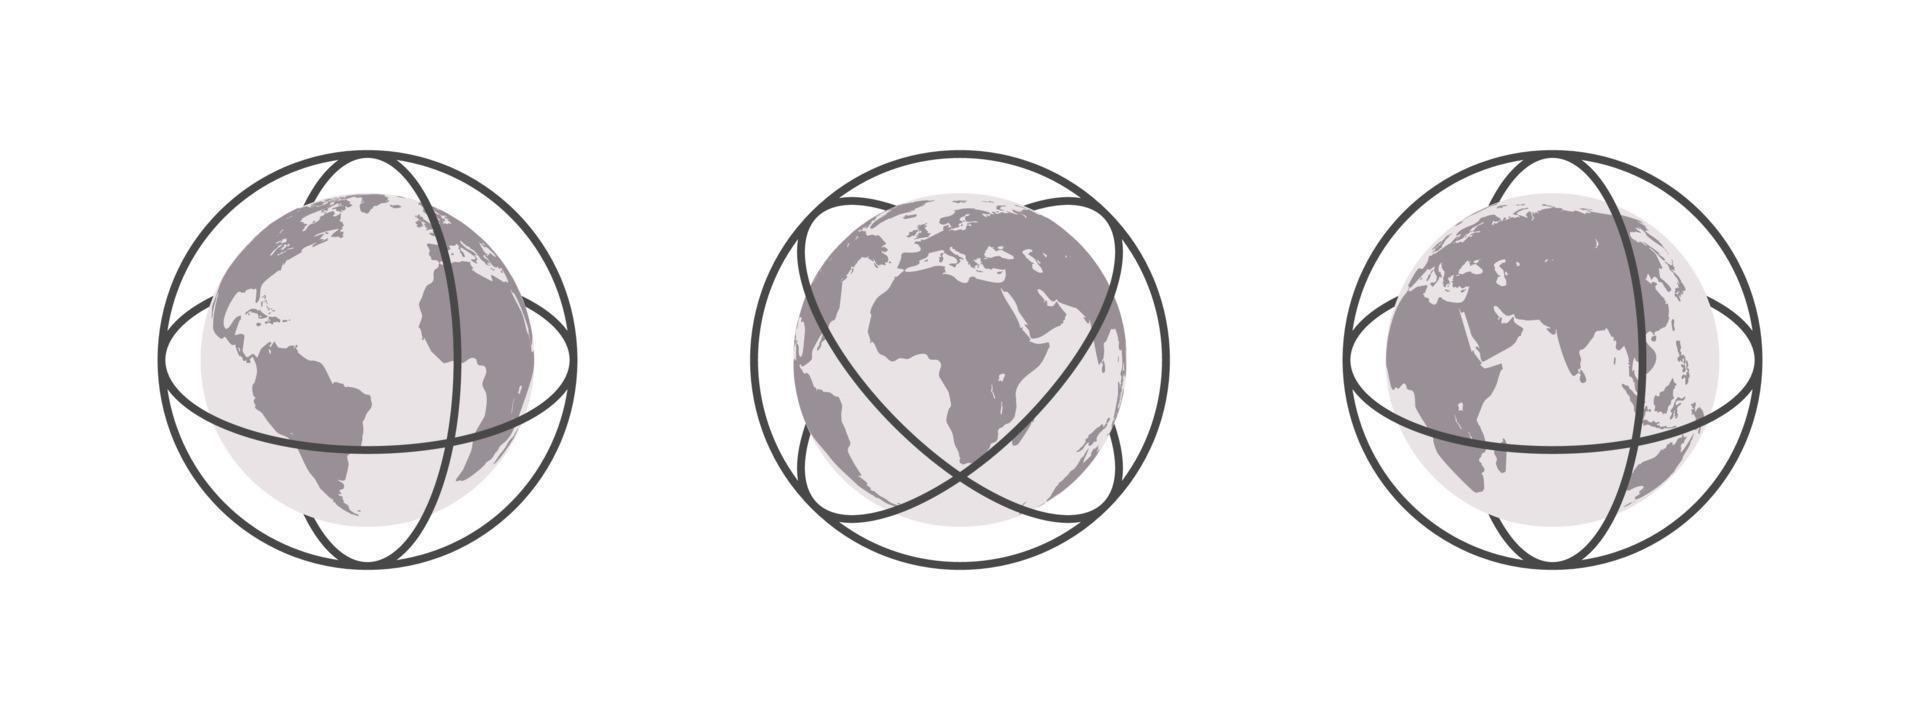 jord kloten med Centrum rader. värld Karta i klot form. jord klot ikon uppsättning. vektor illustration